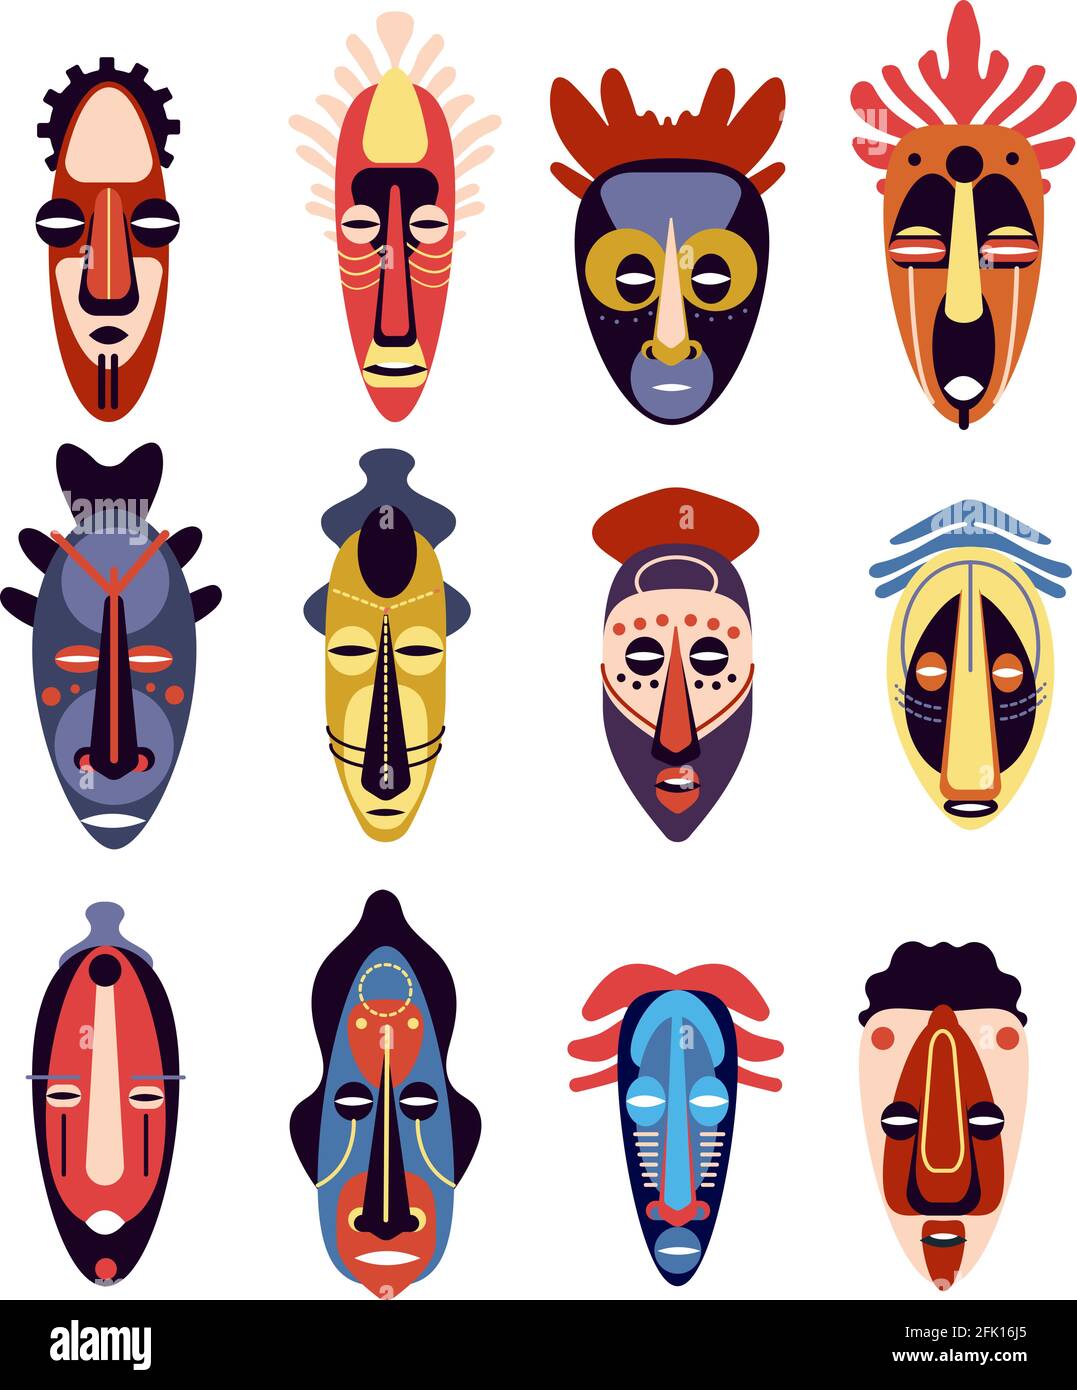 Afrikanische Maske. Traditionelles rituelles oder zeremonielles ethnisches hawaii, azteken-Masken für menschliche Gesichter, Schnauze für Ureinwohnertotem, farbenfrohes, flaches Vektorset Stock Vektor